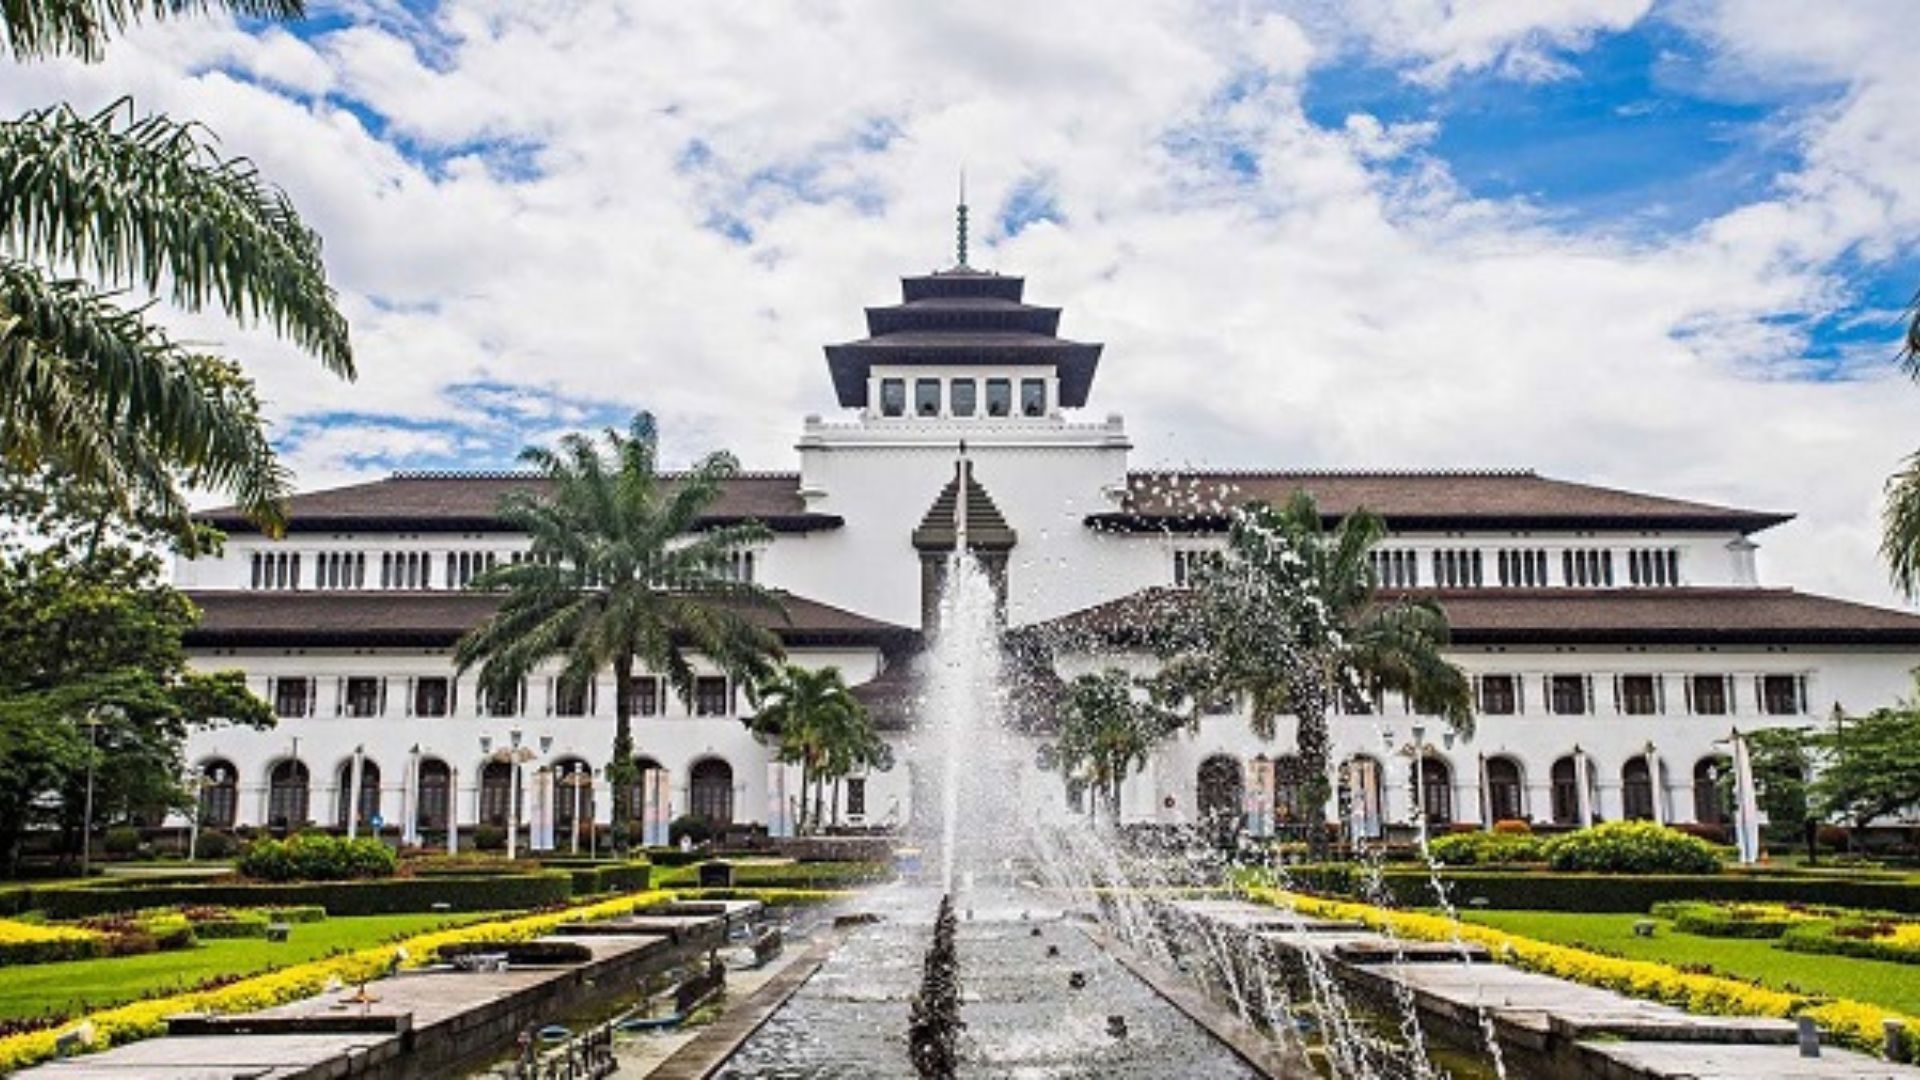 Gedung Sate salah satu landmark ikonik di Jawa Barat